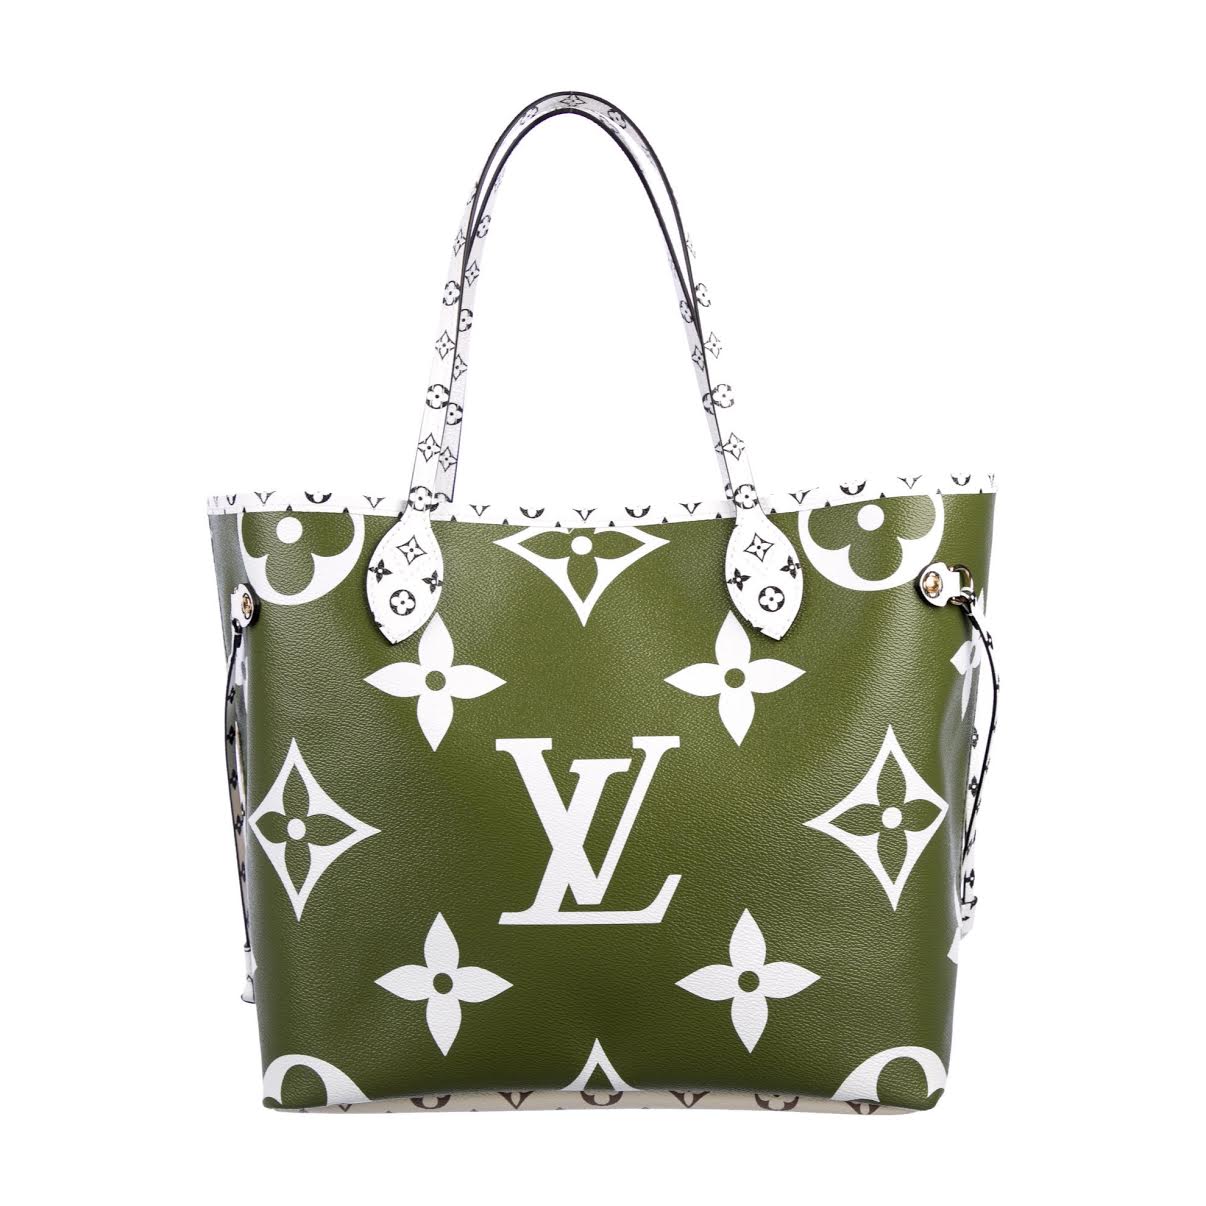 Louis Vuitton Neverfull MM Khaki Green/Beige/Cream for Women